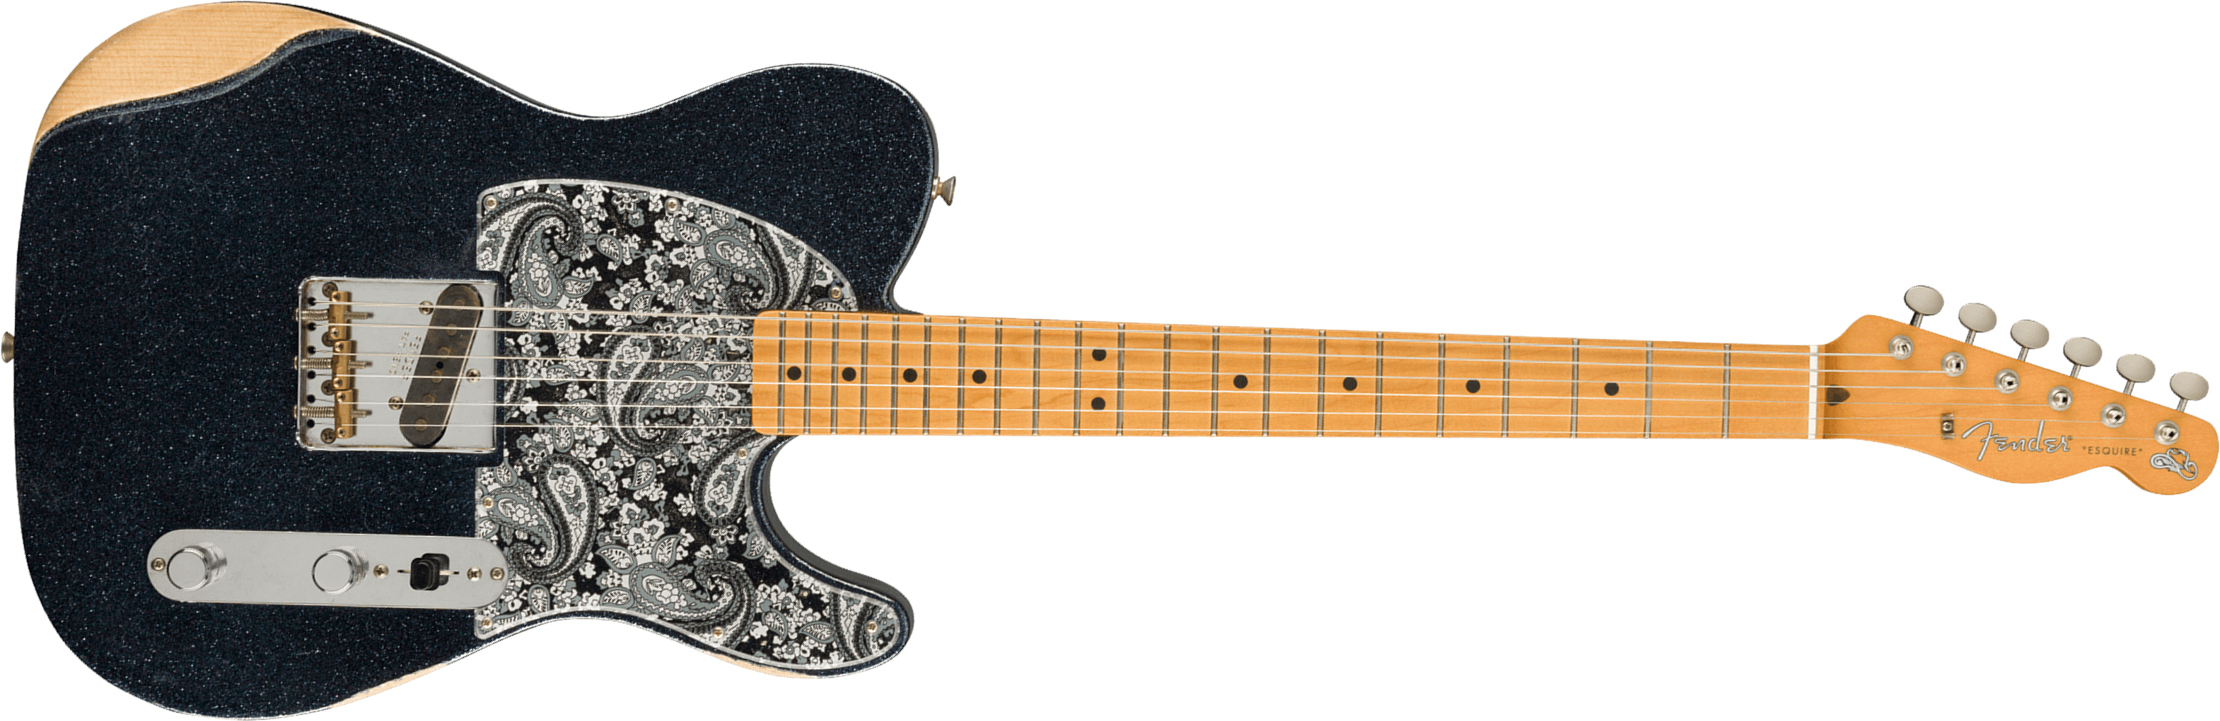 Fender Brad Paisley Esquire Tele Signature Mex Mn - Road Worn Black Sparkle - Guitare Électrique Forme Tel - Main picture